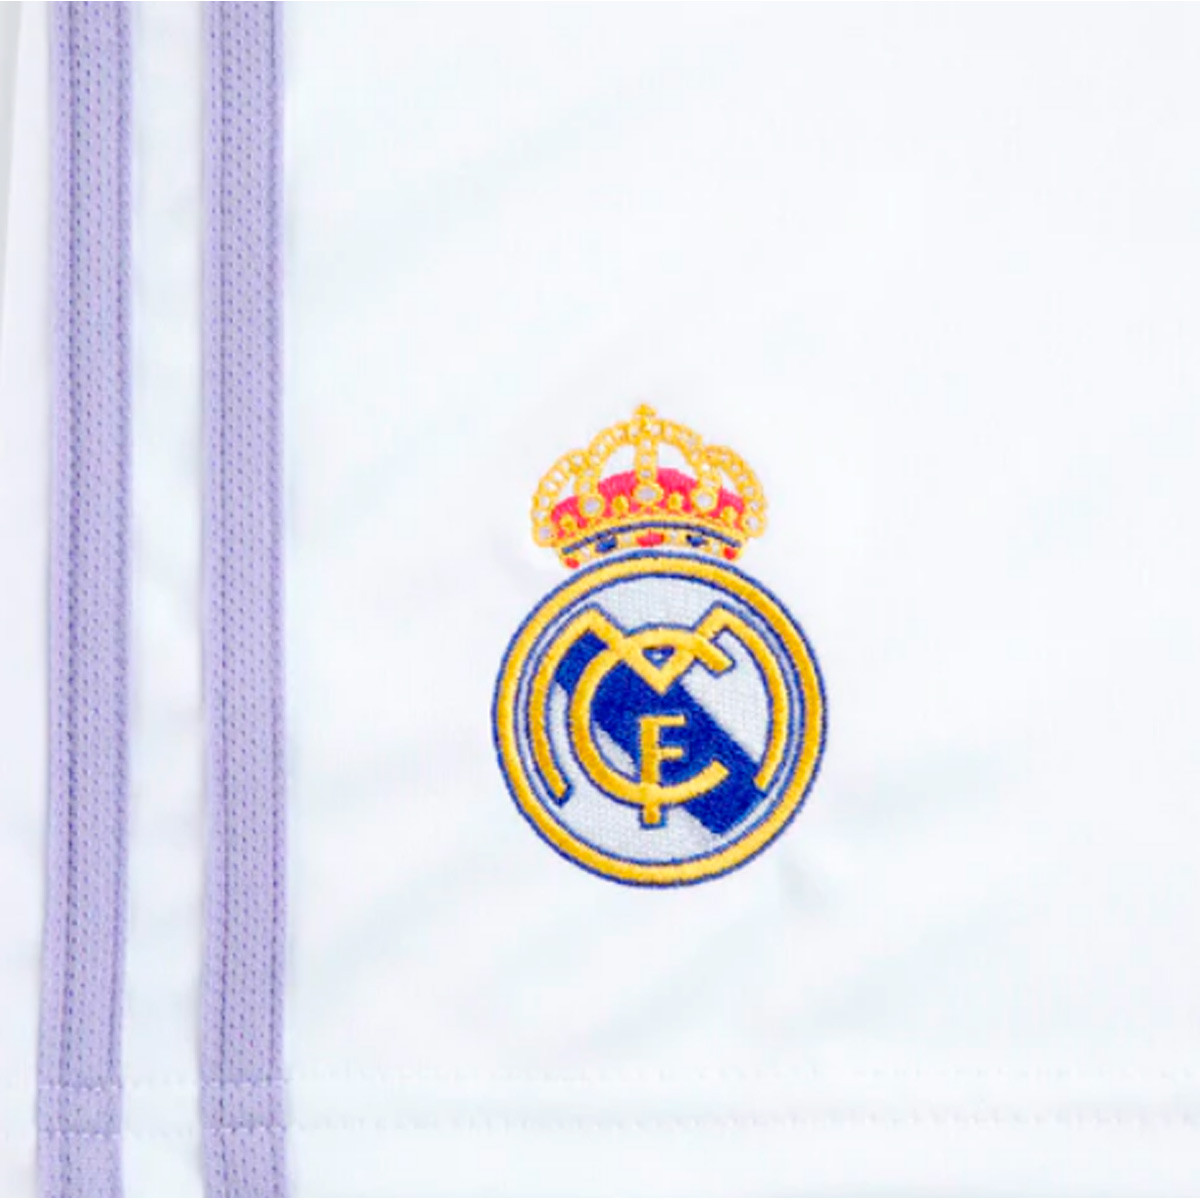 Pantalón corto adidas Madrid CF Primera Equipación White - Fútbol